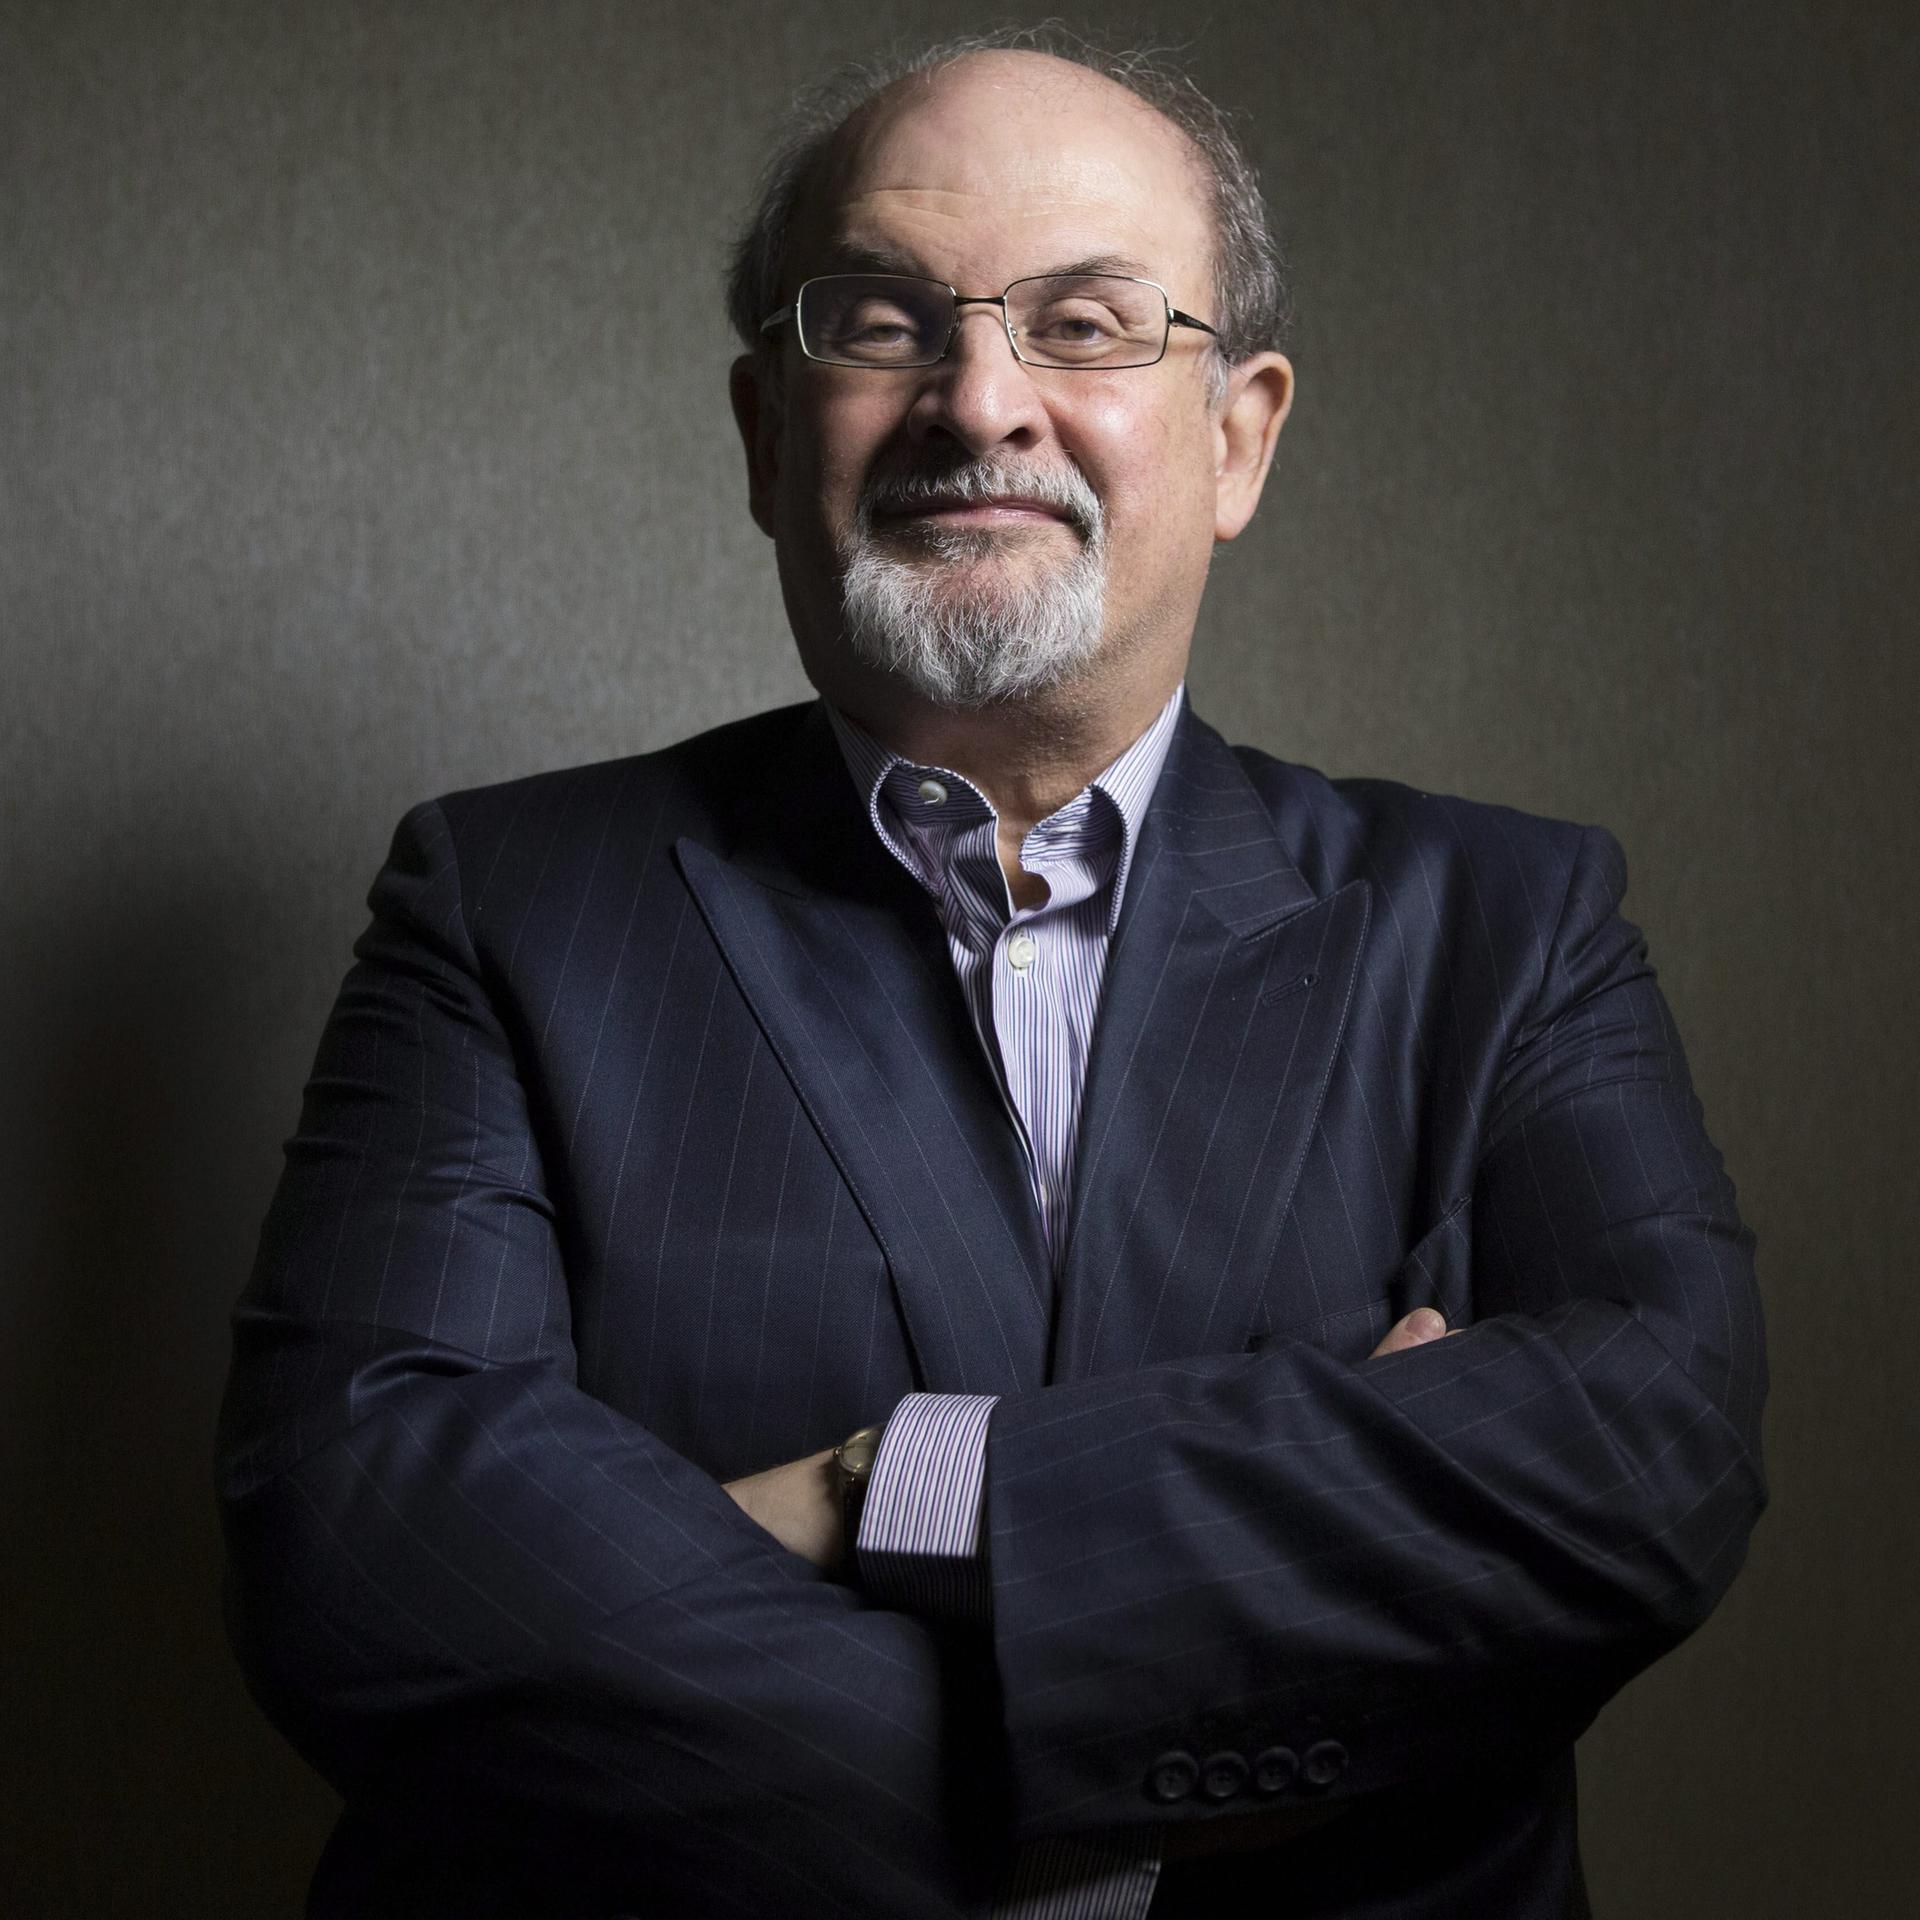 Navid Kermani zum Anschlag auf Salman Rushdie – „Ein Angriff auf jeden, der frei denken möchte“